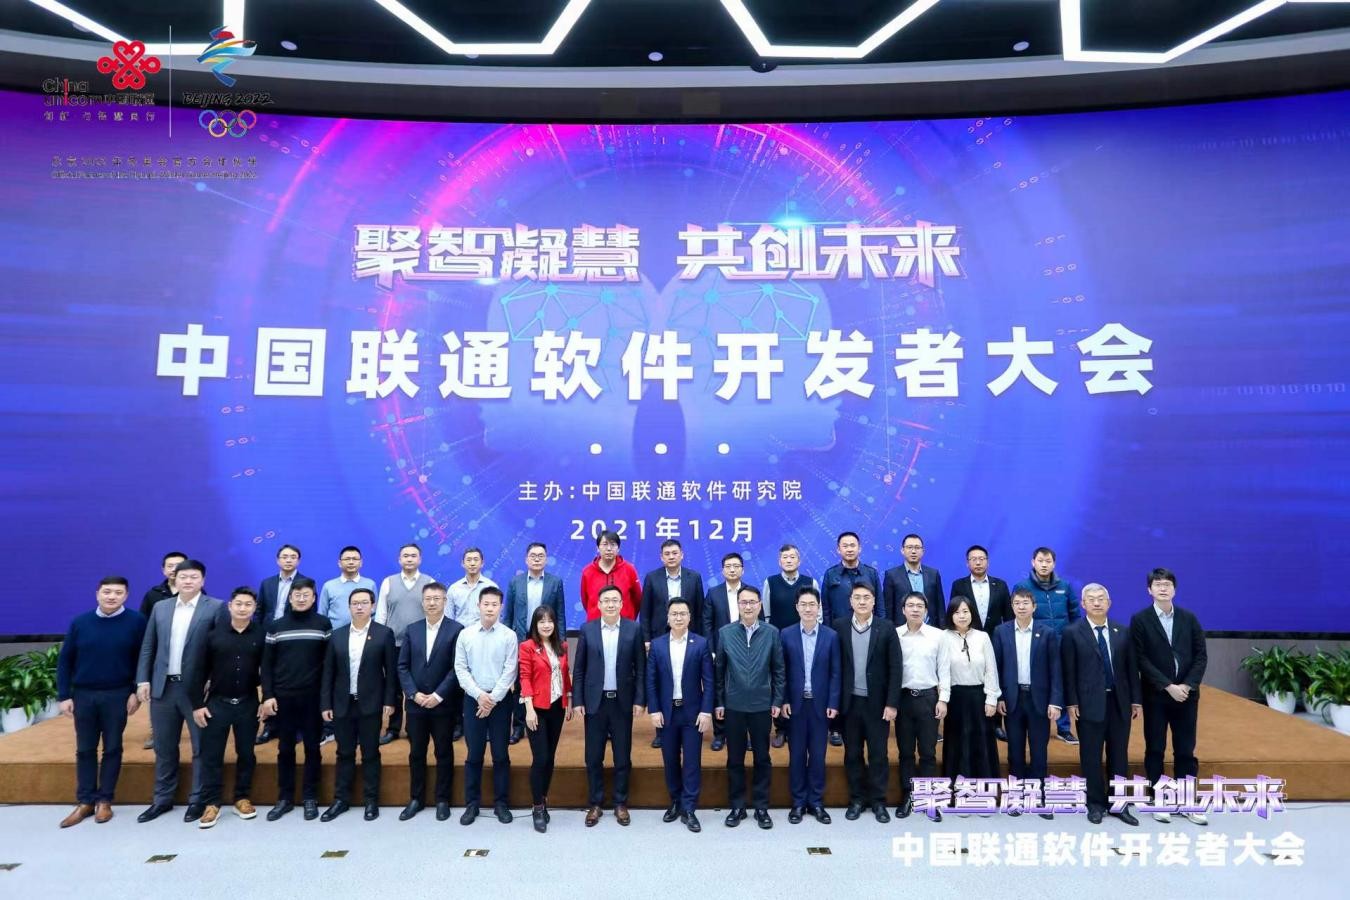  亚信科技揽获中国联通软件开发者大会三项大奖